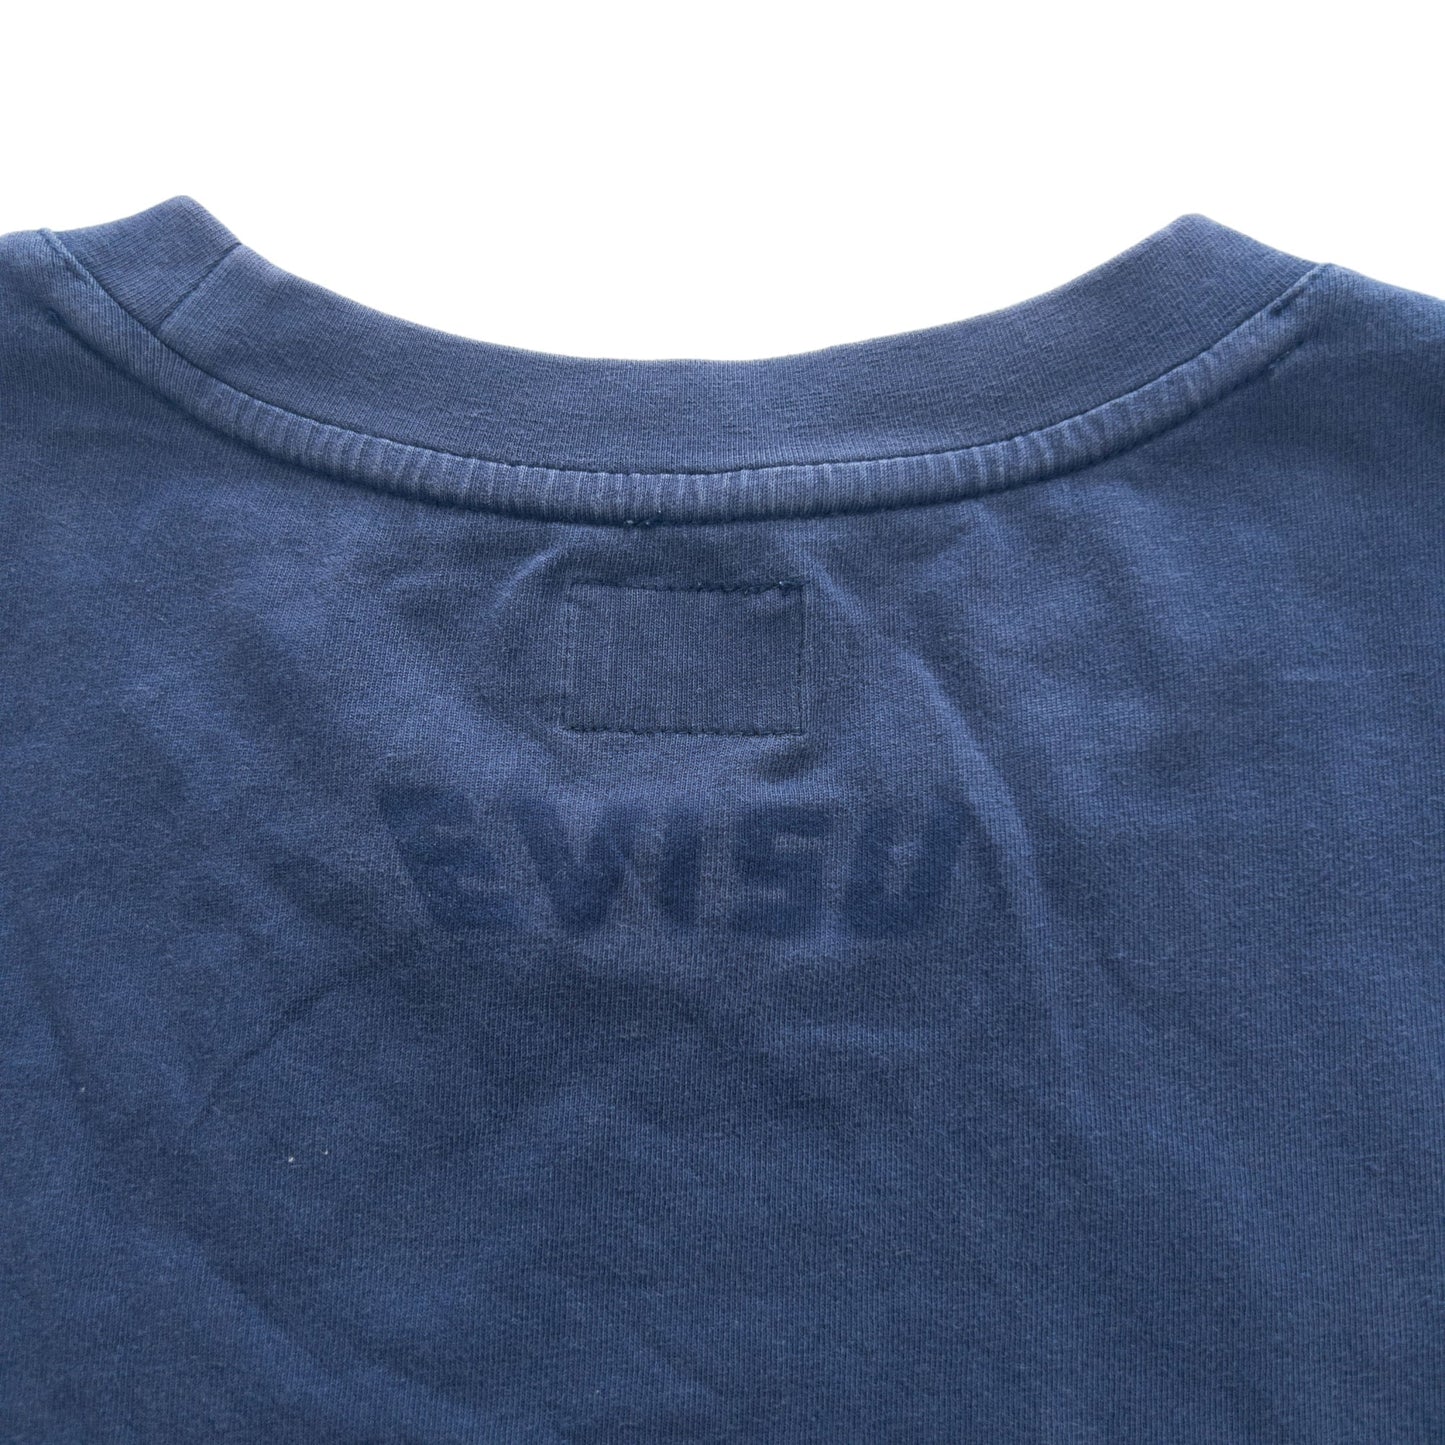 Vintage Evisu Graphic T-Shirt Size S